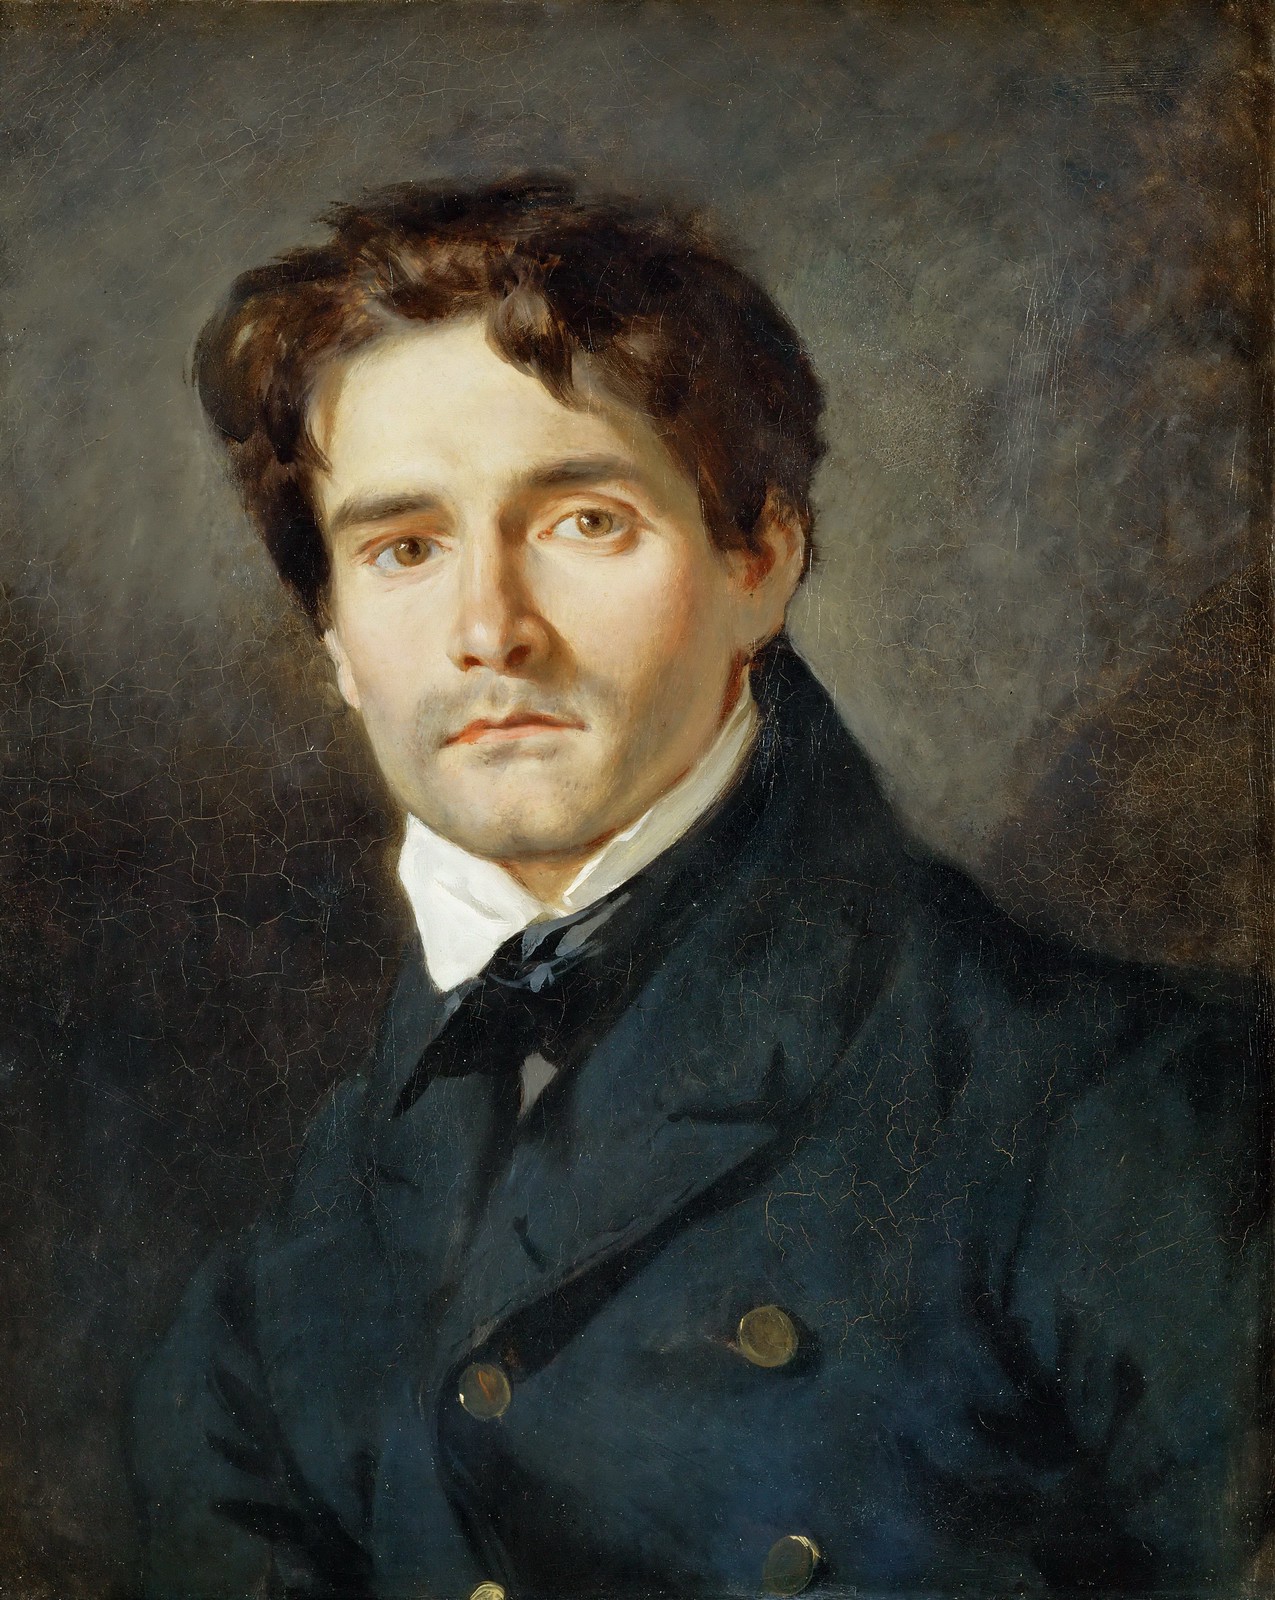 Léon Riesener by Eugène Delacroix, 1835